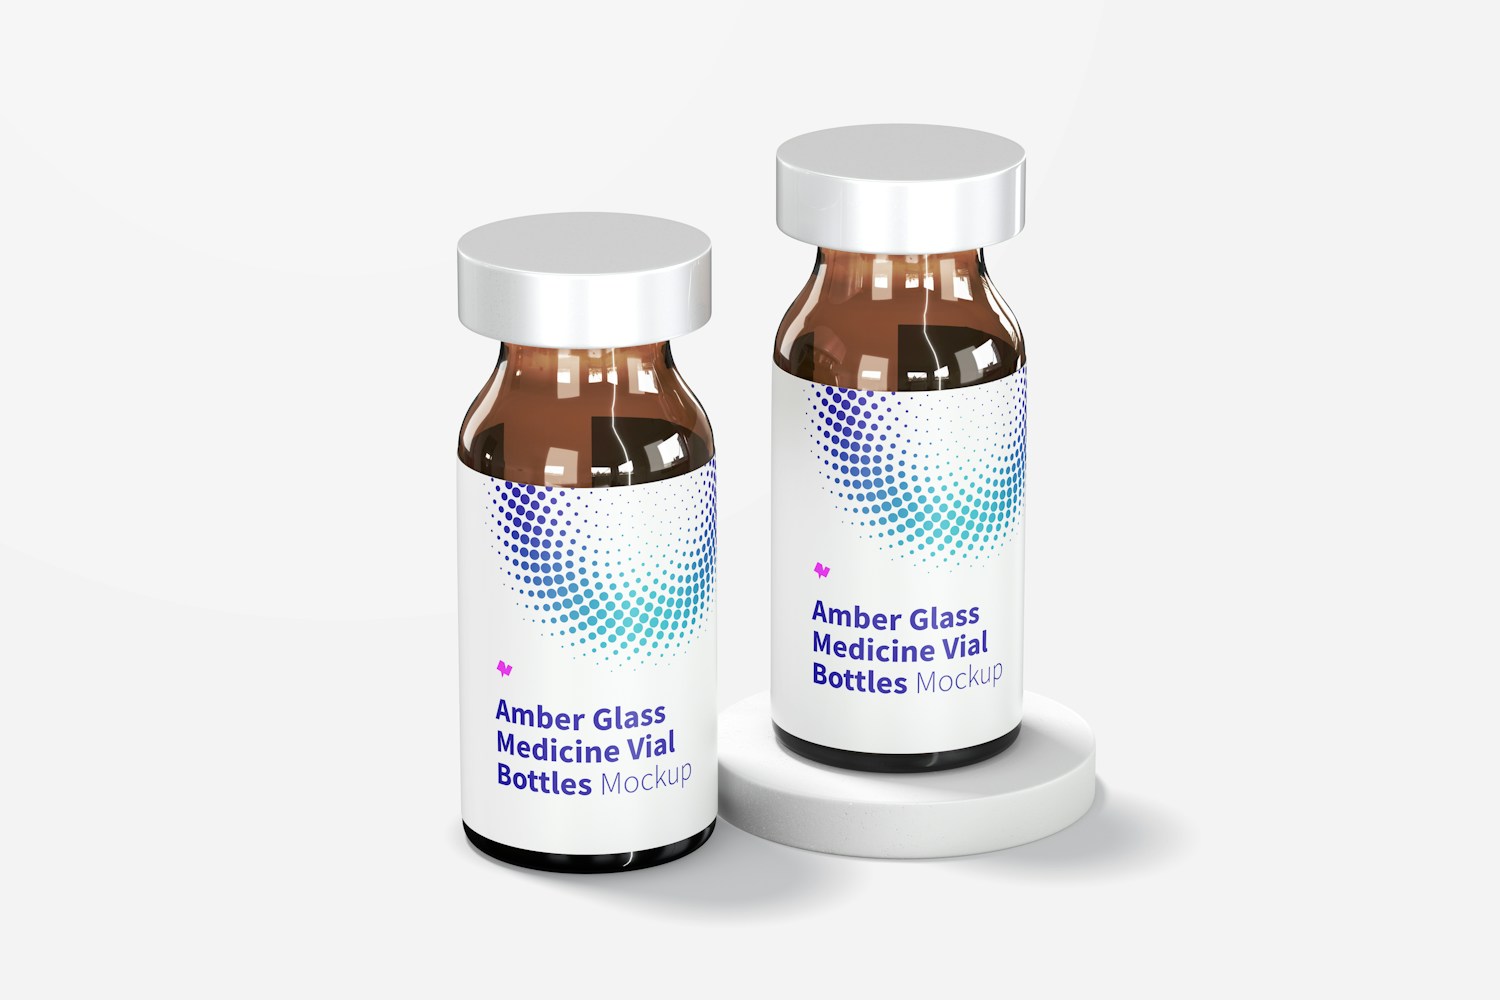 Amber Glass Medicine Vial Bottles Mockup